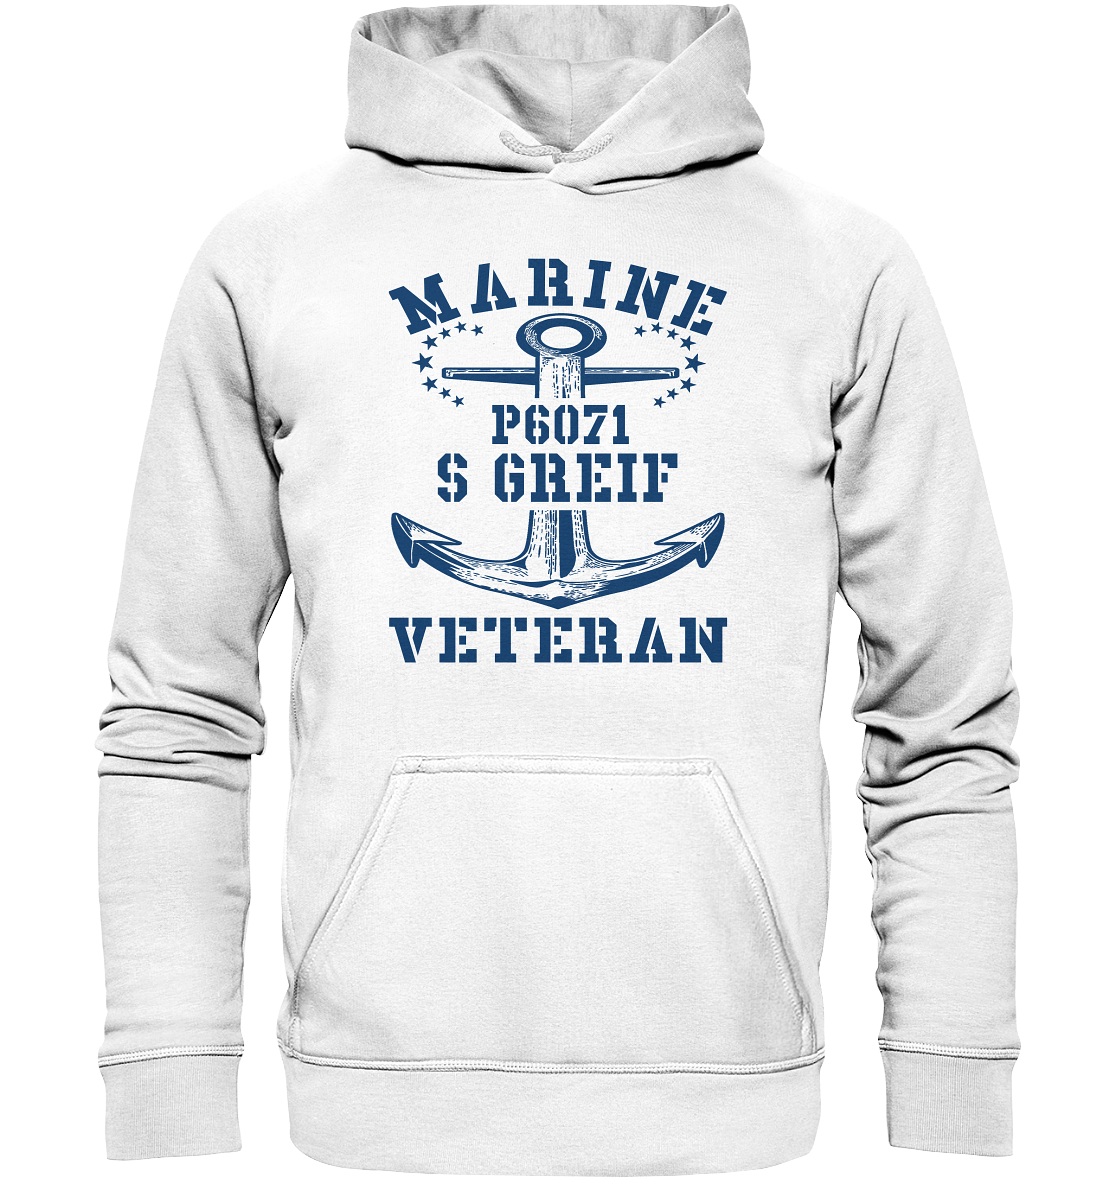 P6071 S GREIF Marine Veteran - Basic Unisex Hoodie